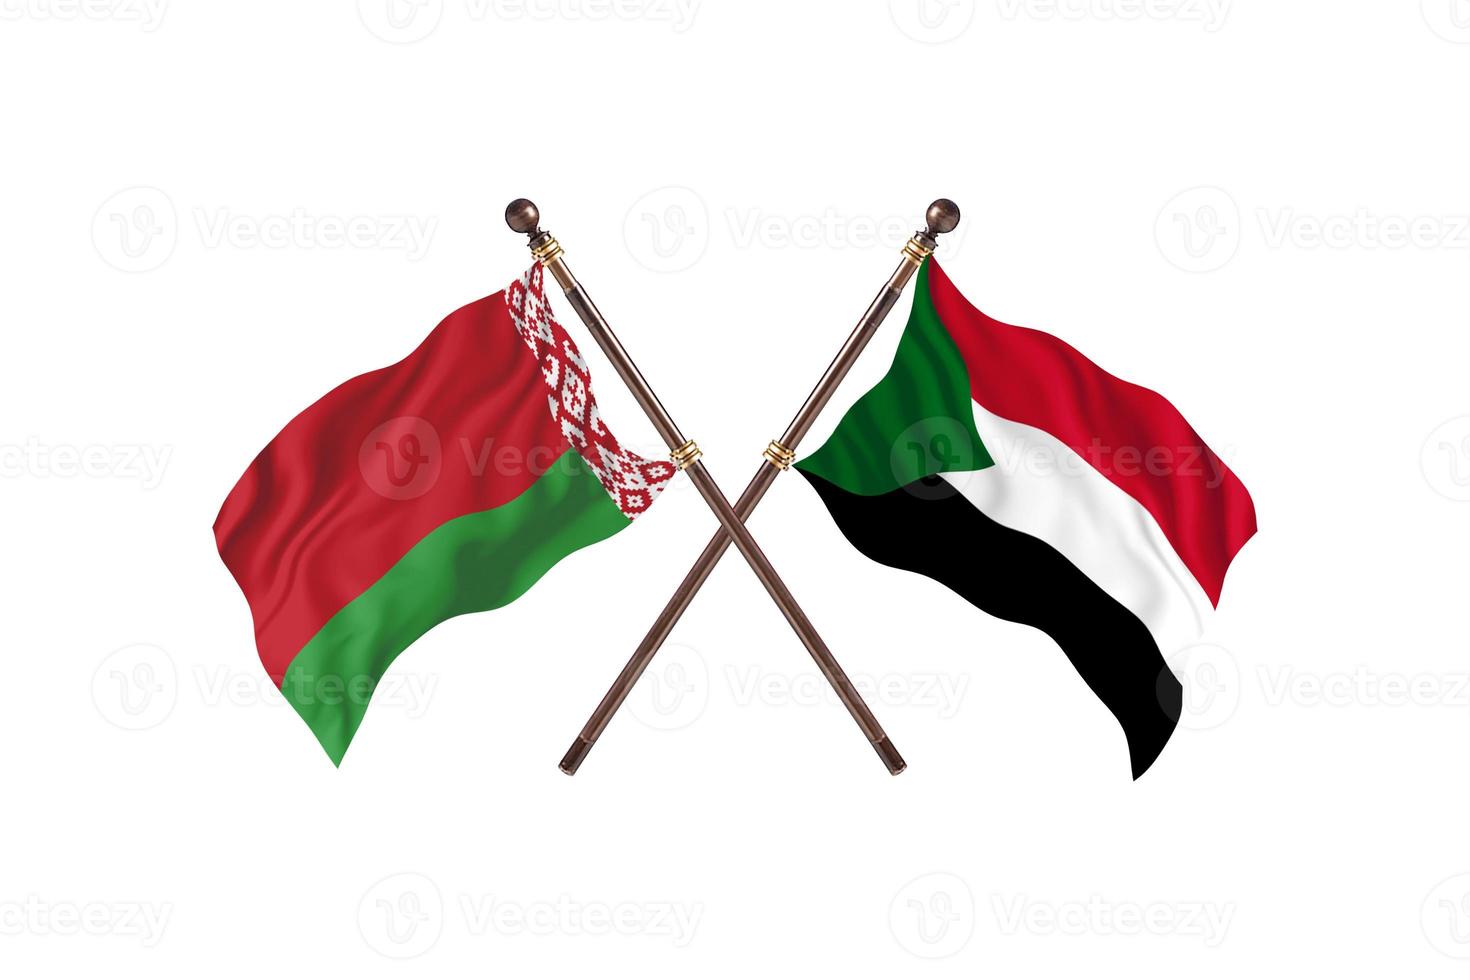 Wit-Rusland versus Soedan twee land vlaggen foto